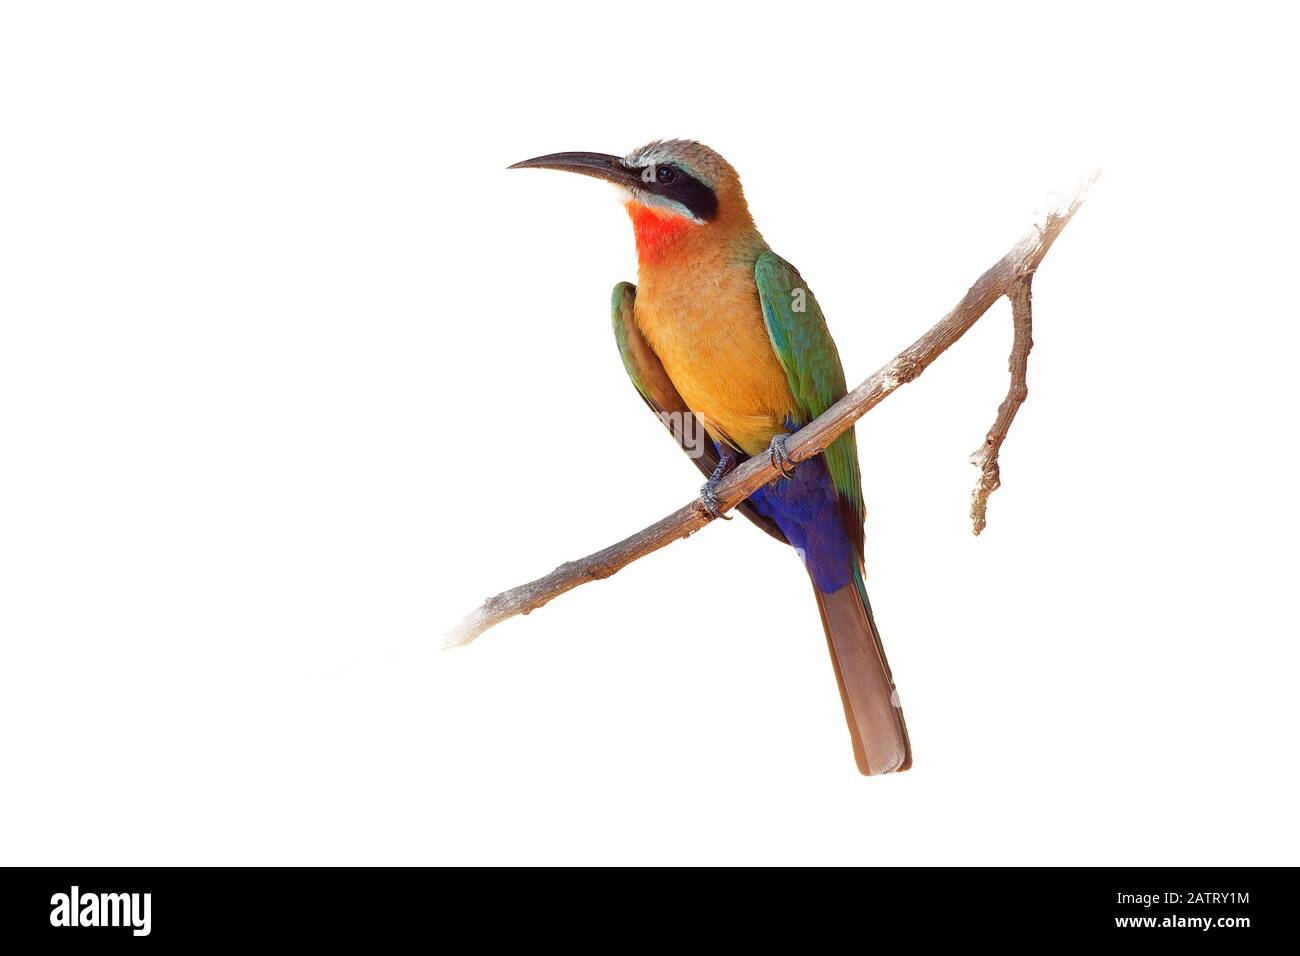 L'Oie rieuse Bee-eater - Merops bullockoides vert et orange et rouge oiseau largement diffusé de sous-L'Afrique équatoriale, nichent en petites colonies, digg Banque D'Images